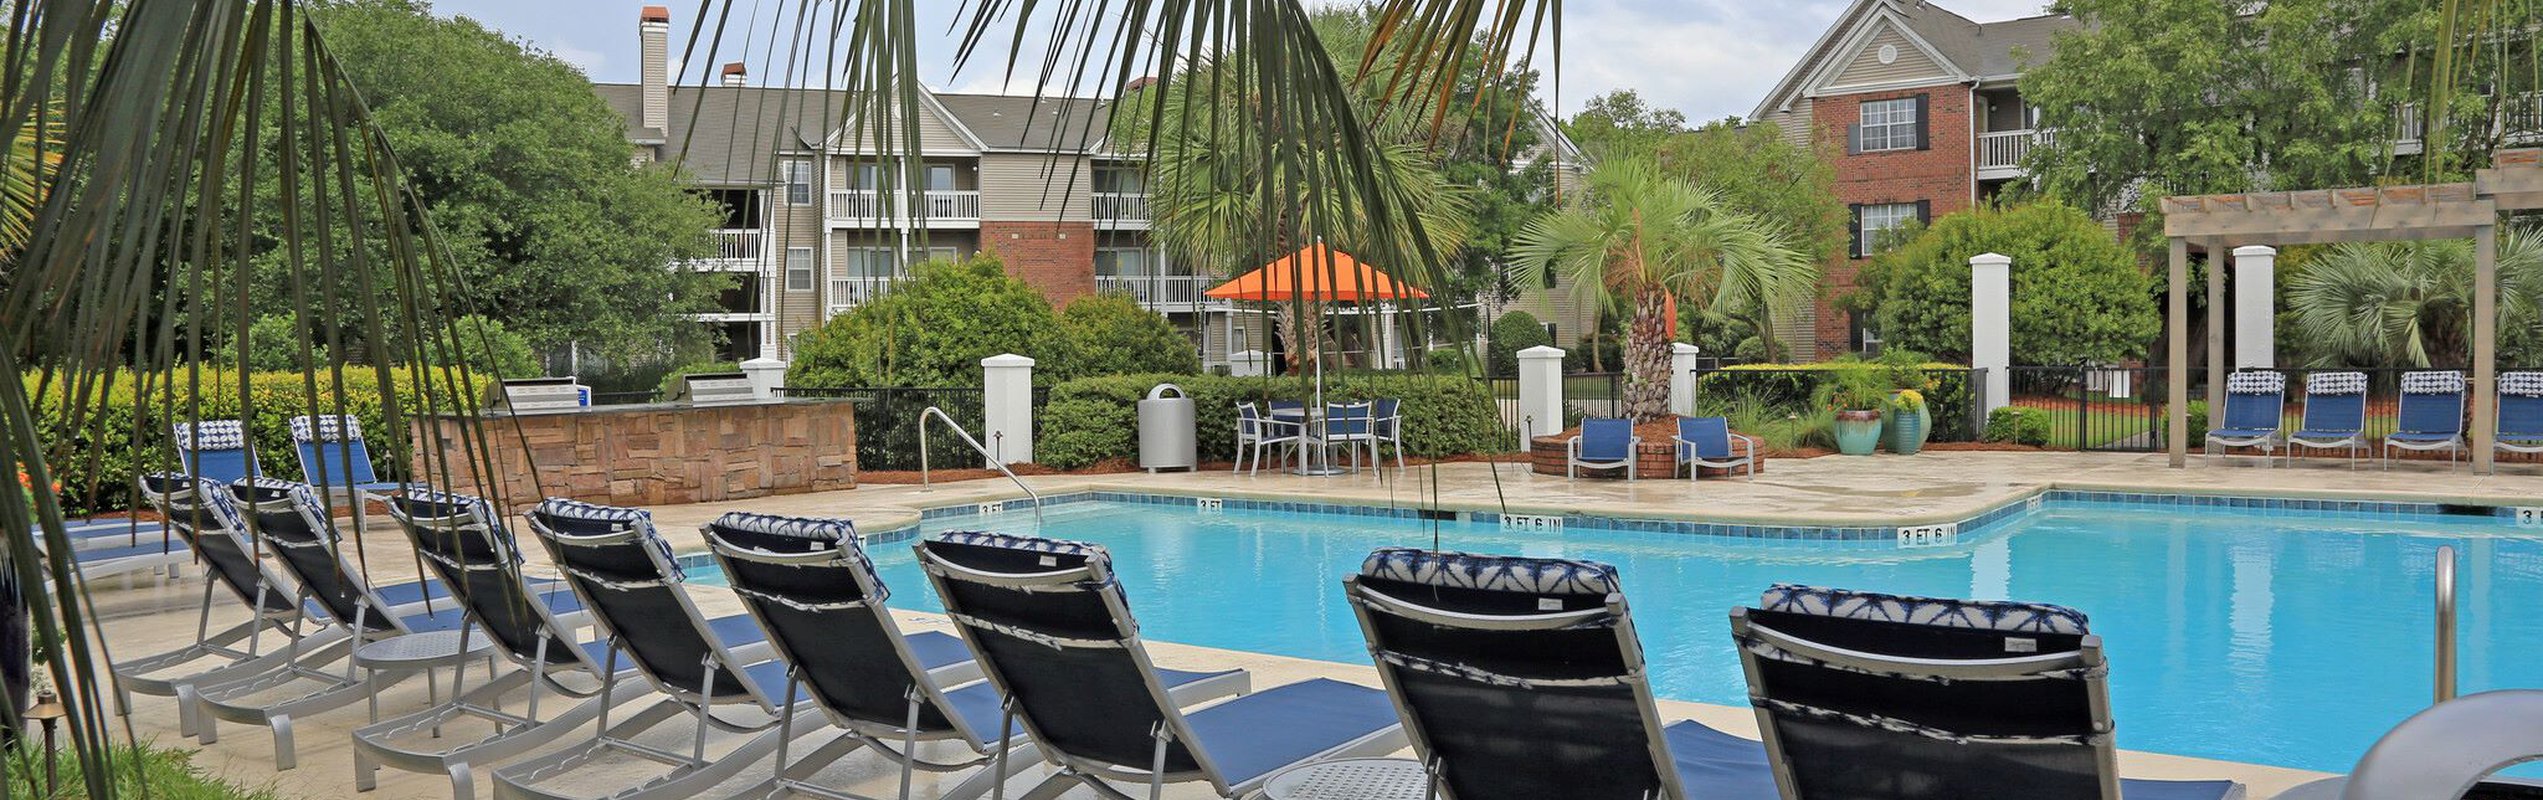 pool located at Georgetown Crossing in Savannah GA